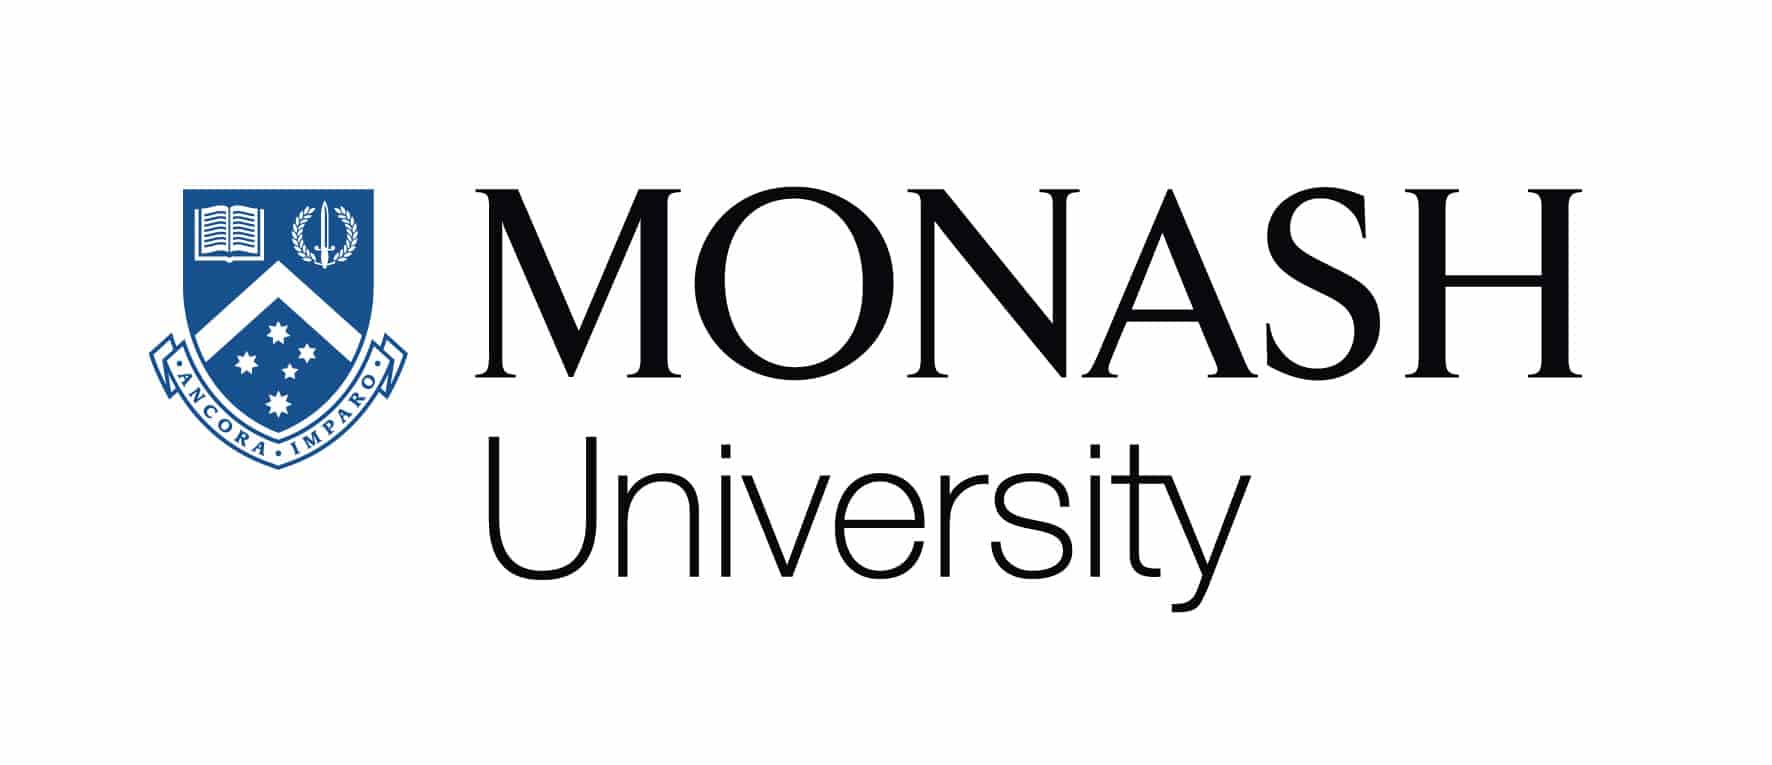 منحة جامعة موناش لدراسة البكالوريوس والماجستير في أستراليا 2021